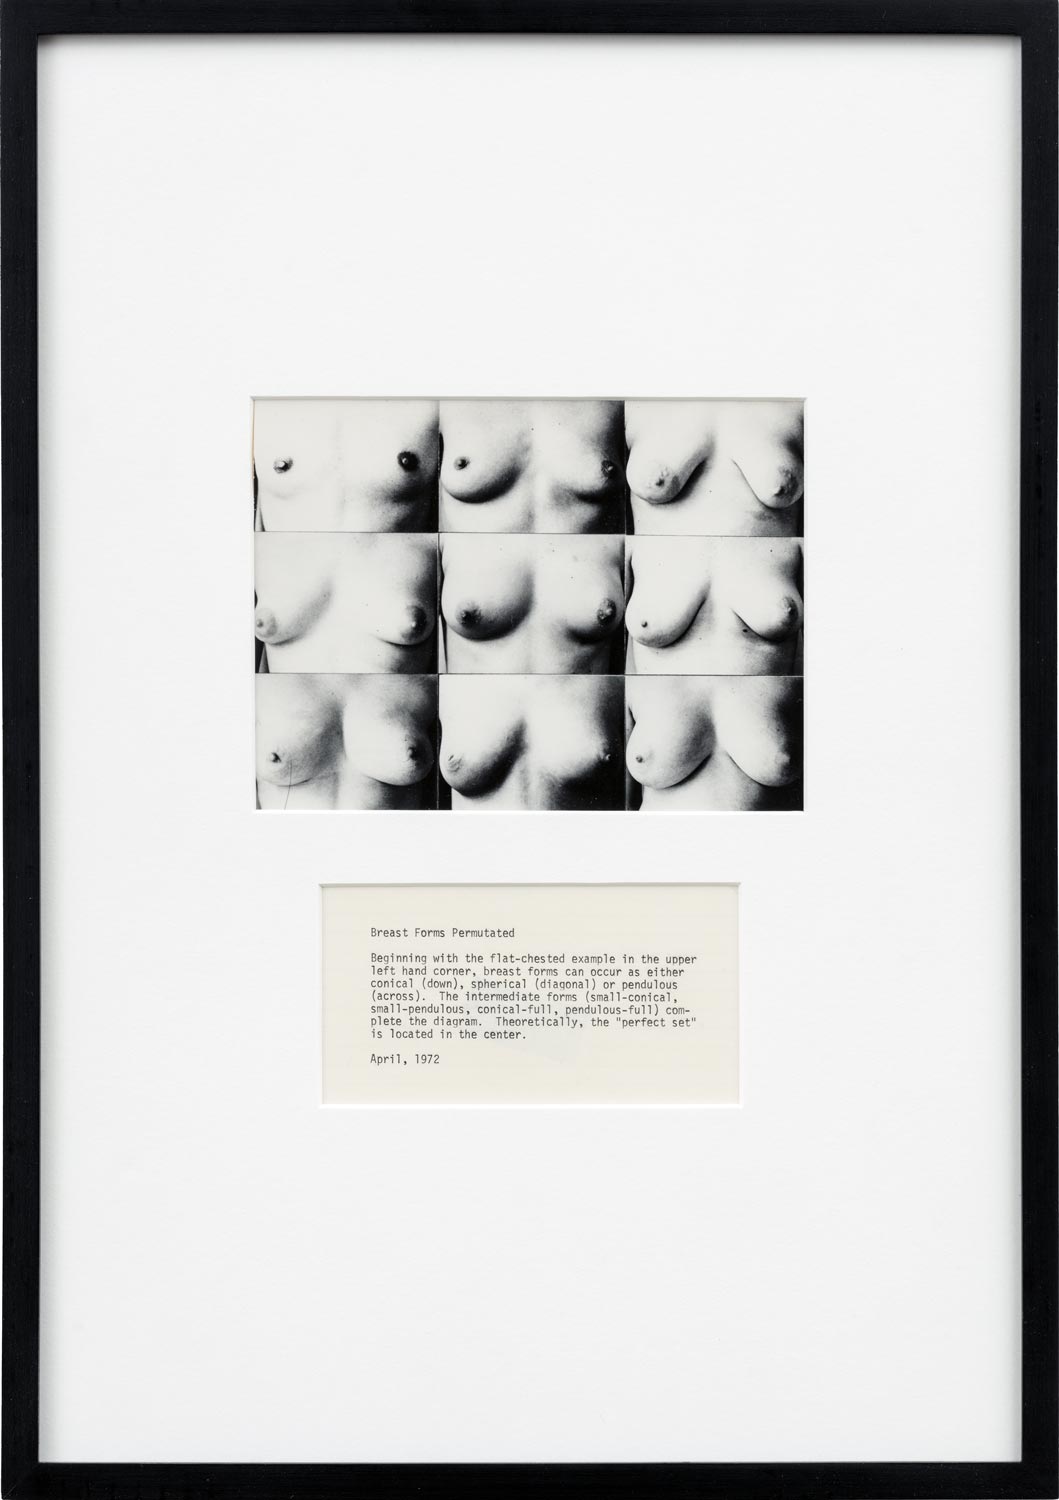 martha-wilson-breast-forms-permutated-1972